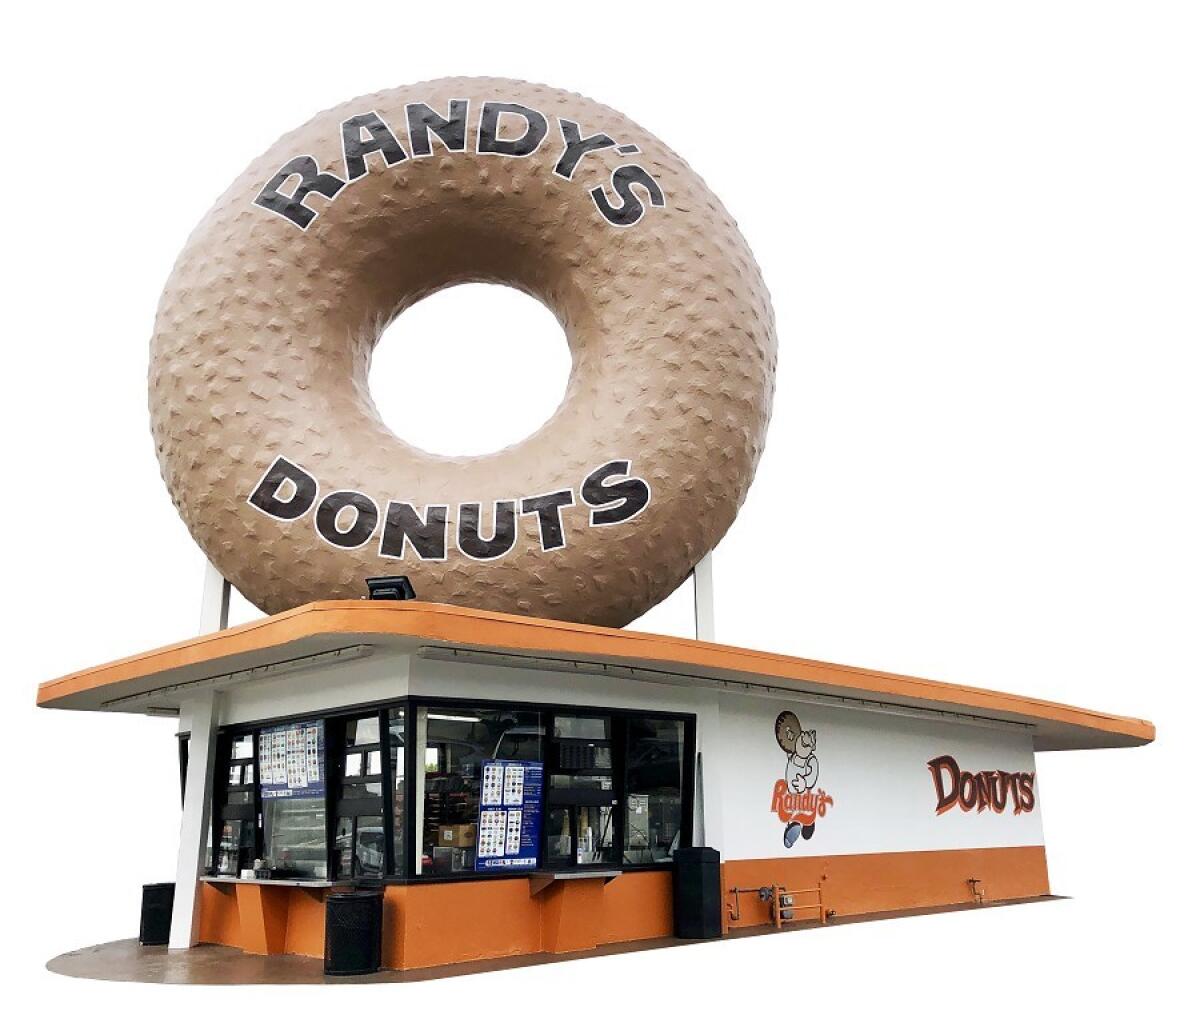 The original Randy's Donuts shop in Los Angeles.  